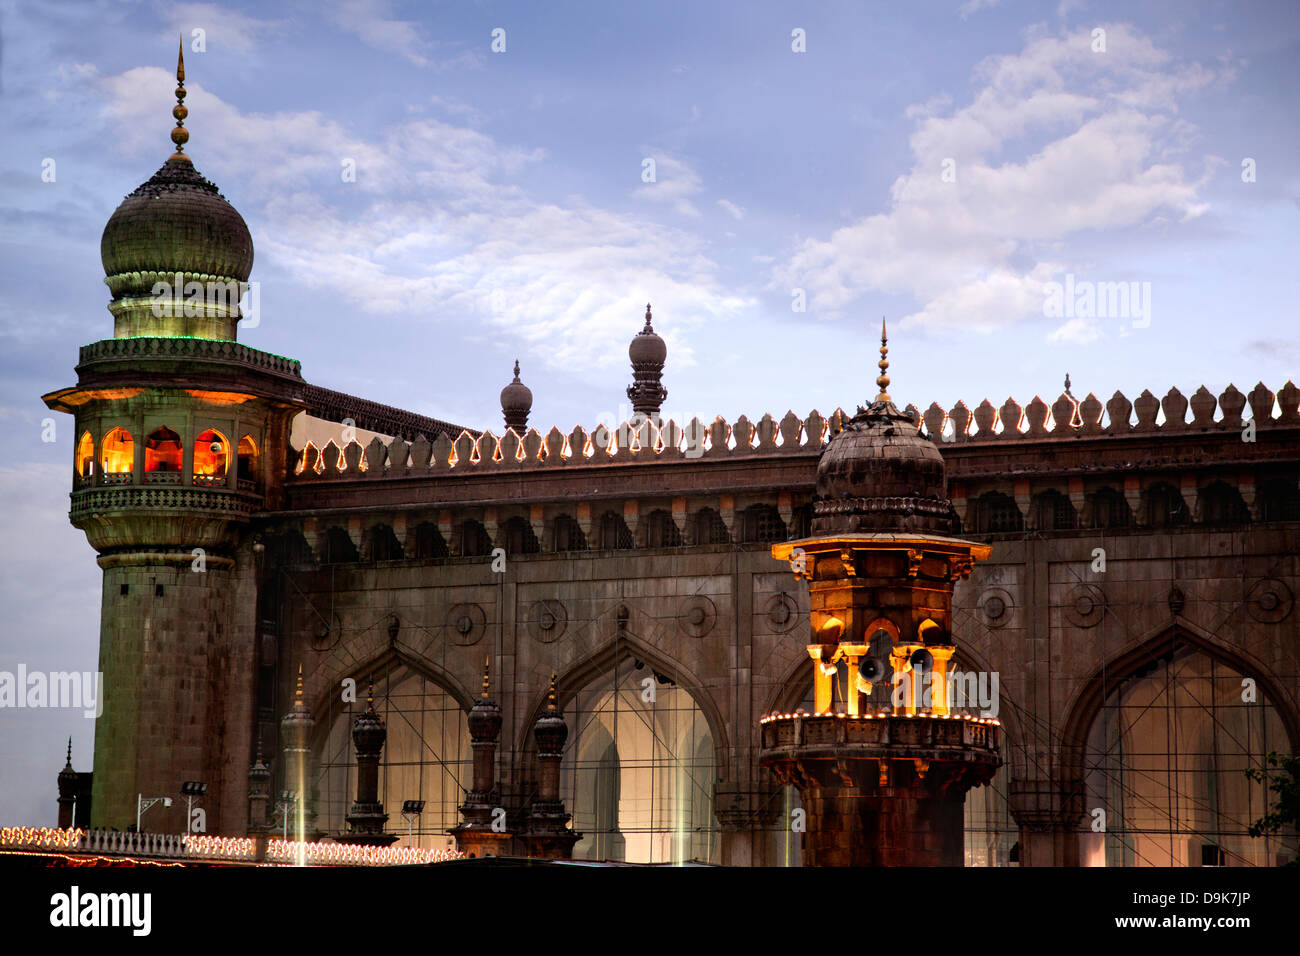 Fassade von einer Moschee Mekka Masjid, Charminar, Hyderabad, Andhra Pradesh, Indien Stockfoto